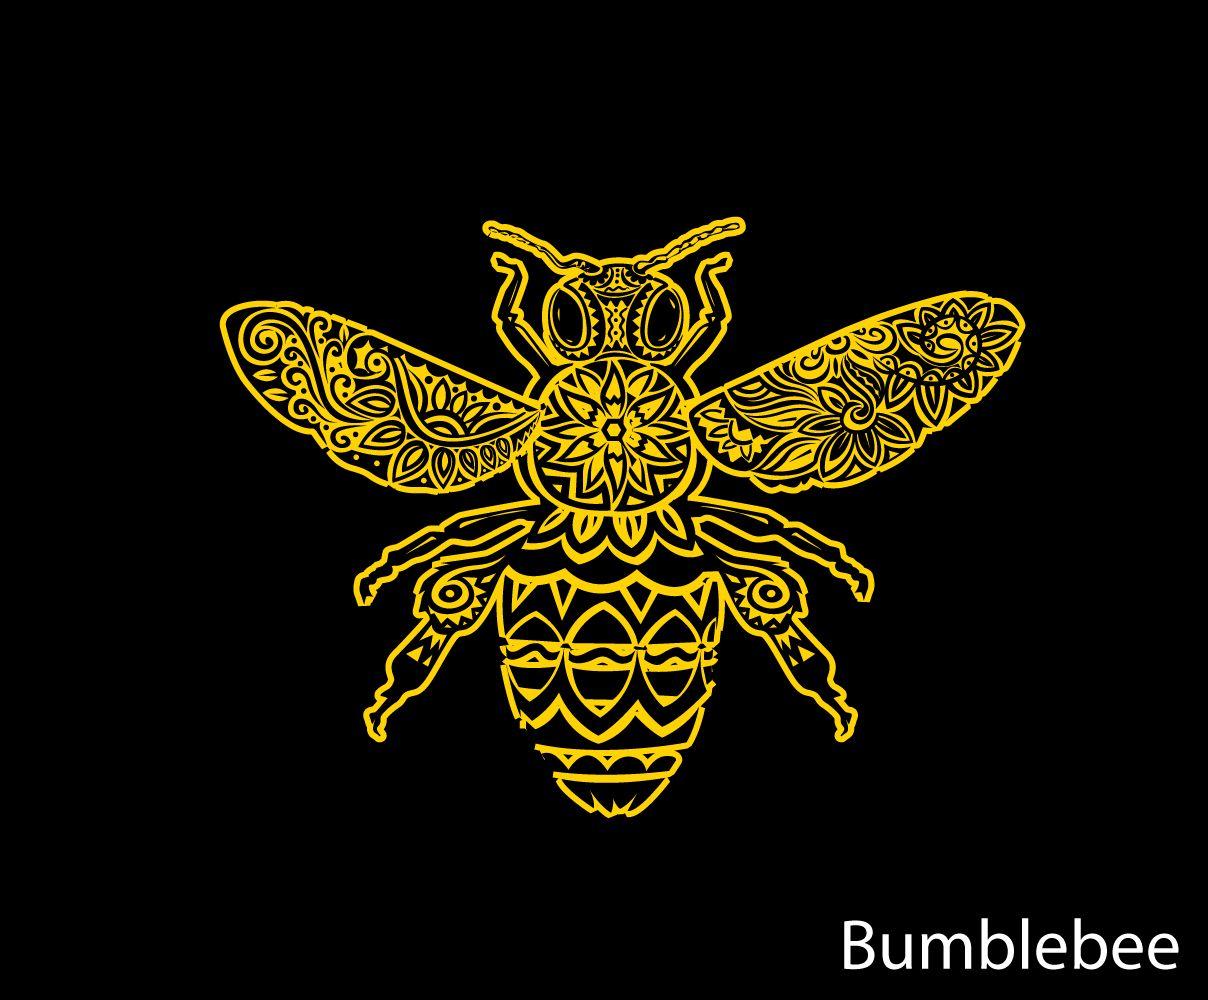 Bumblebee Logo - Skydiving Photographer Needs a Bumblebee logo | 63 Logo Designs for ...